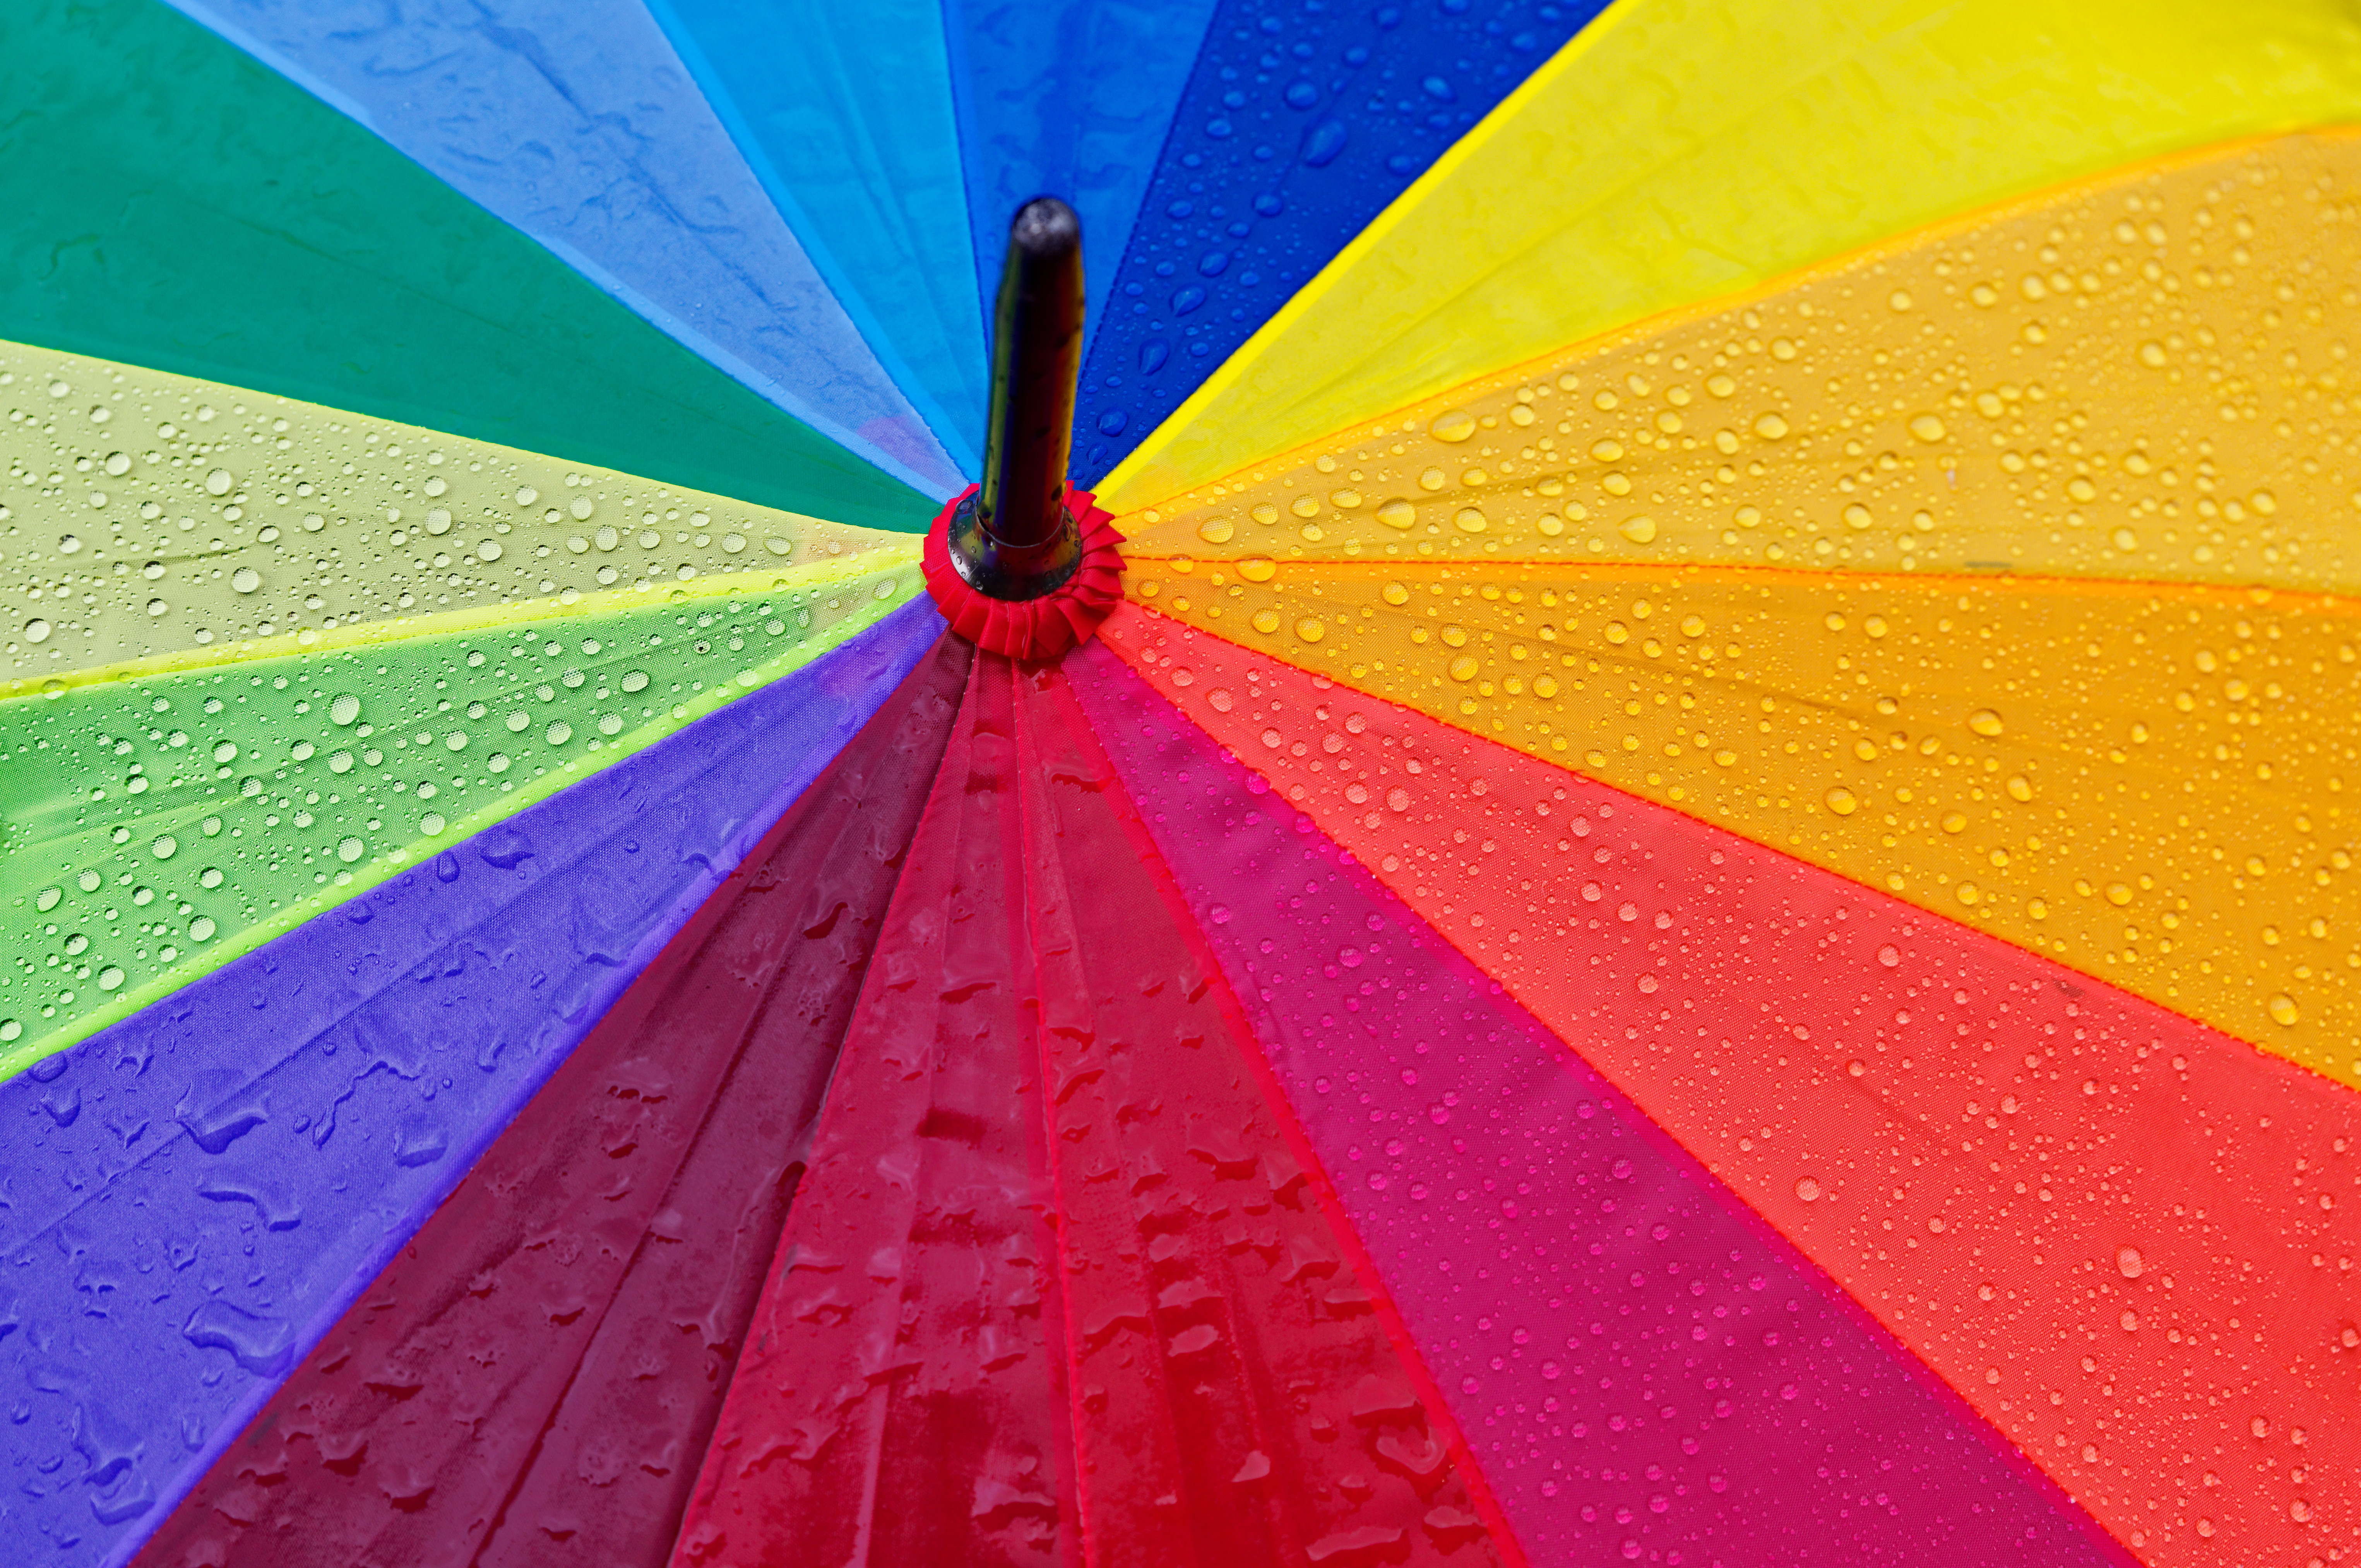 Free download wallpaper Miscellanea, Drops, Motley, Miscellaneous, Umbrella, Multicolored, Rain on your PC desktop